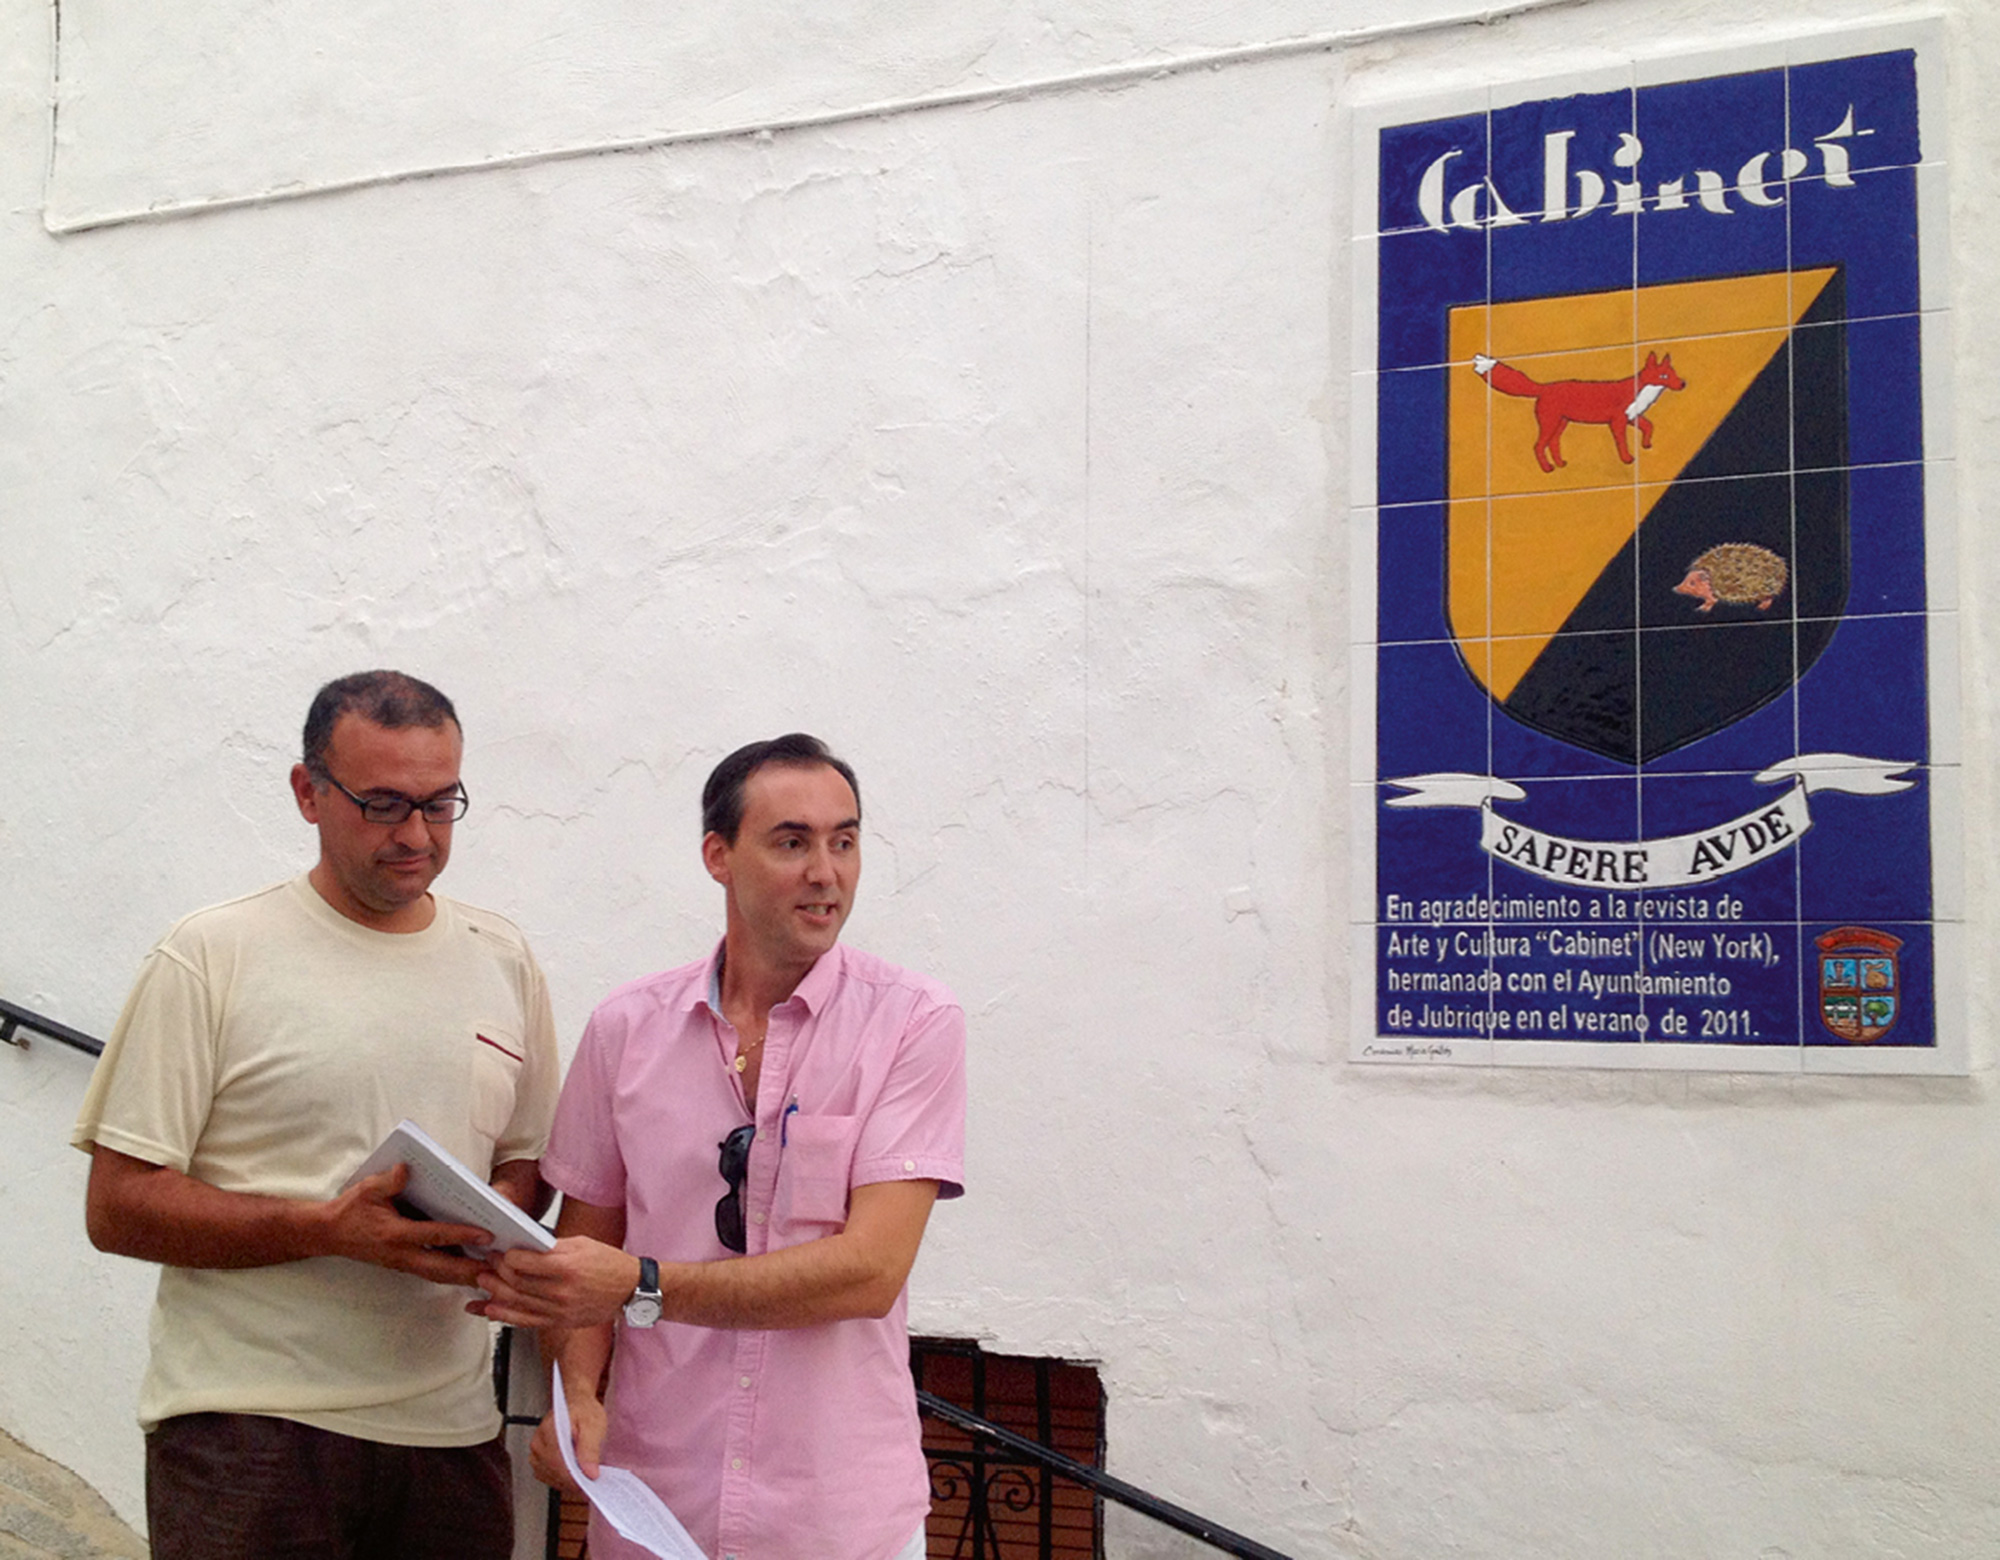 Jubrique’s mayor David Sanchez (right) and deputy mayor Paco Jesus inaugurate the ceramic plaque. Courtesy Ayuntamiento de Jubrique.